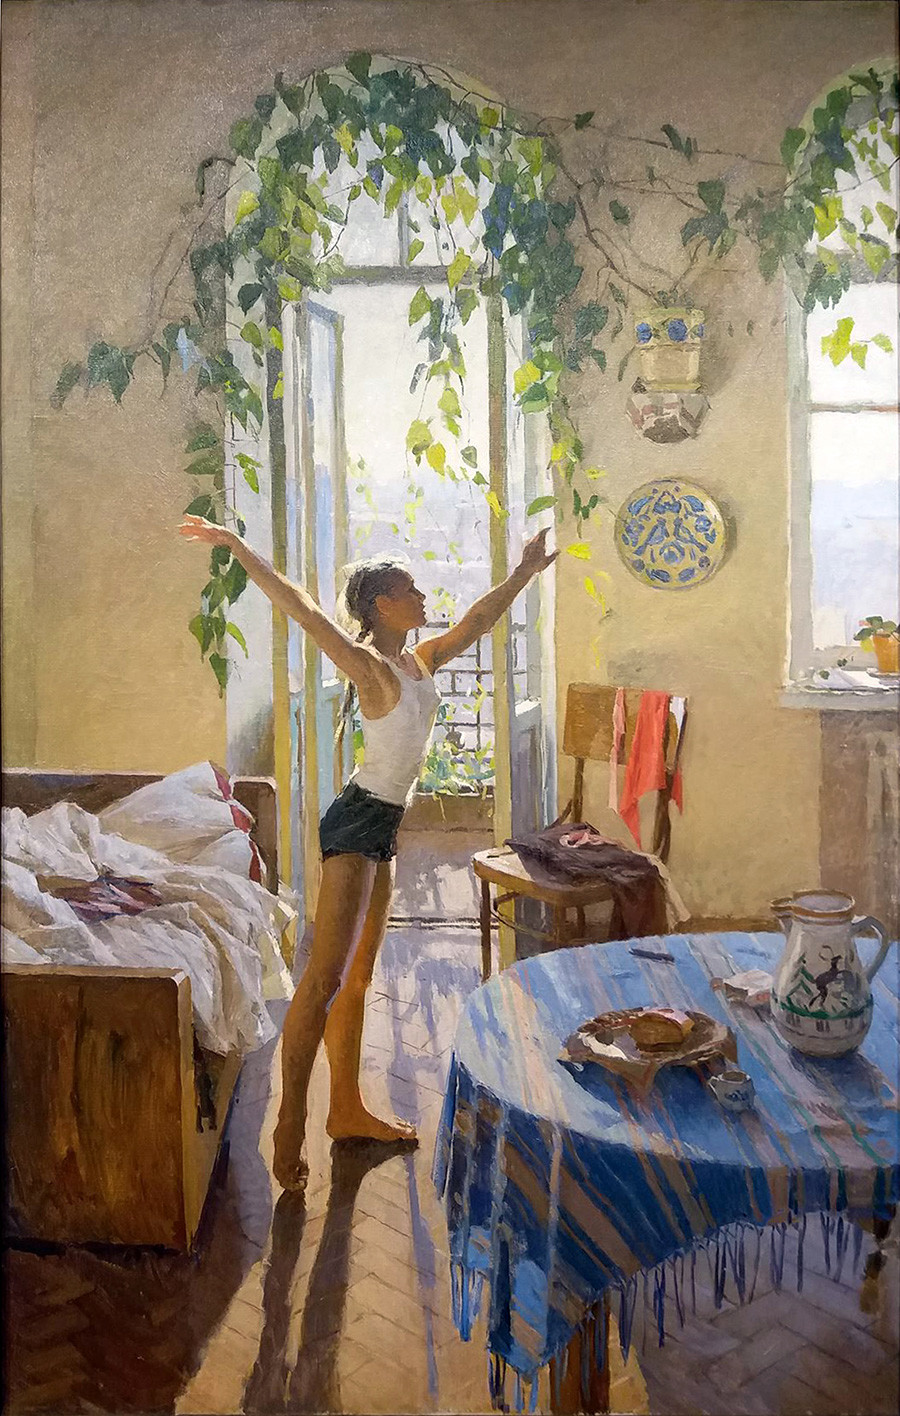 « Matin », par Tatiana Iablonskaïa, 1954

